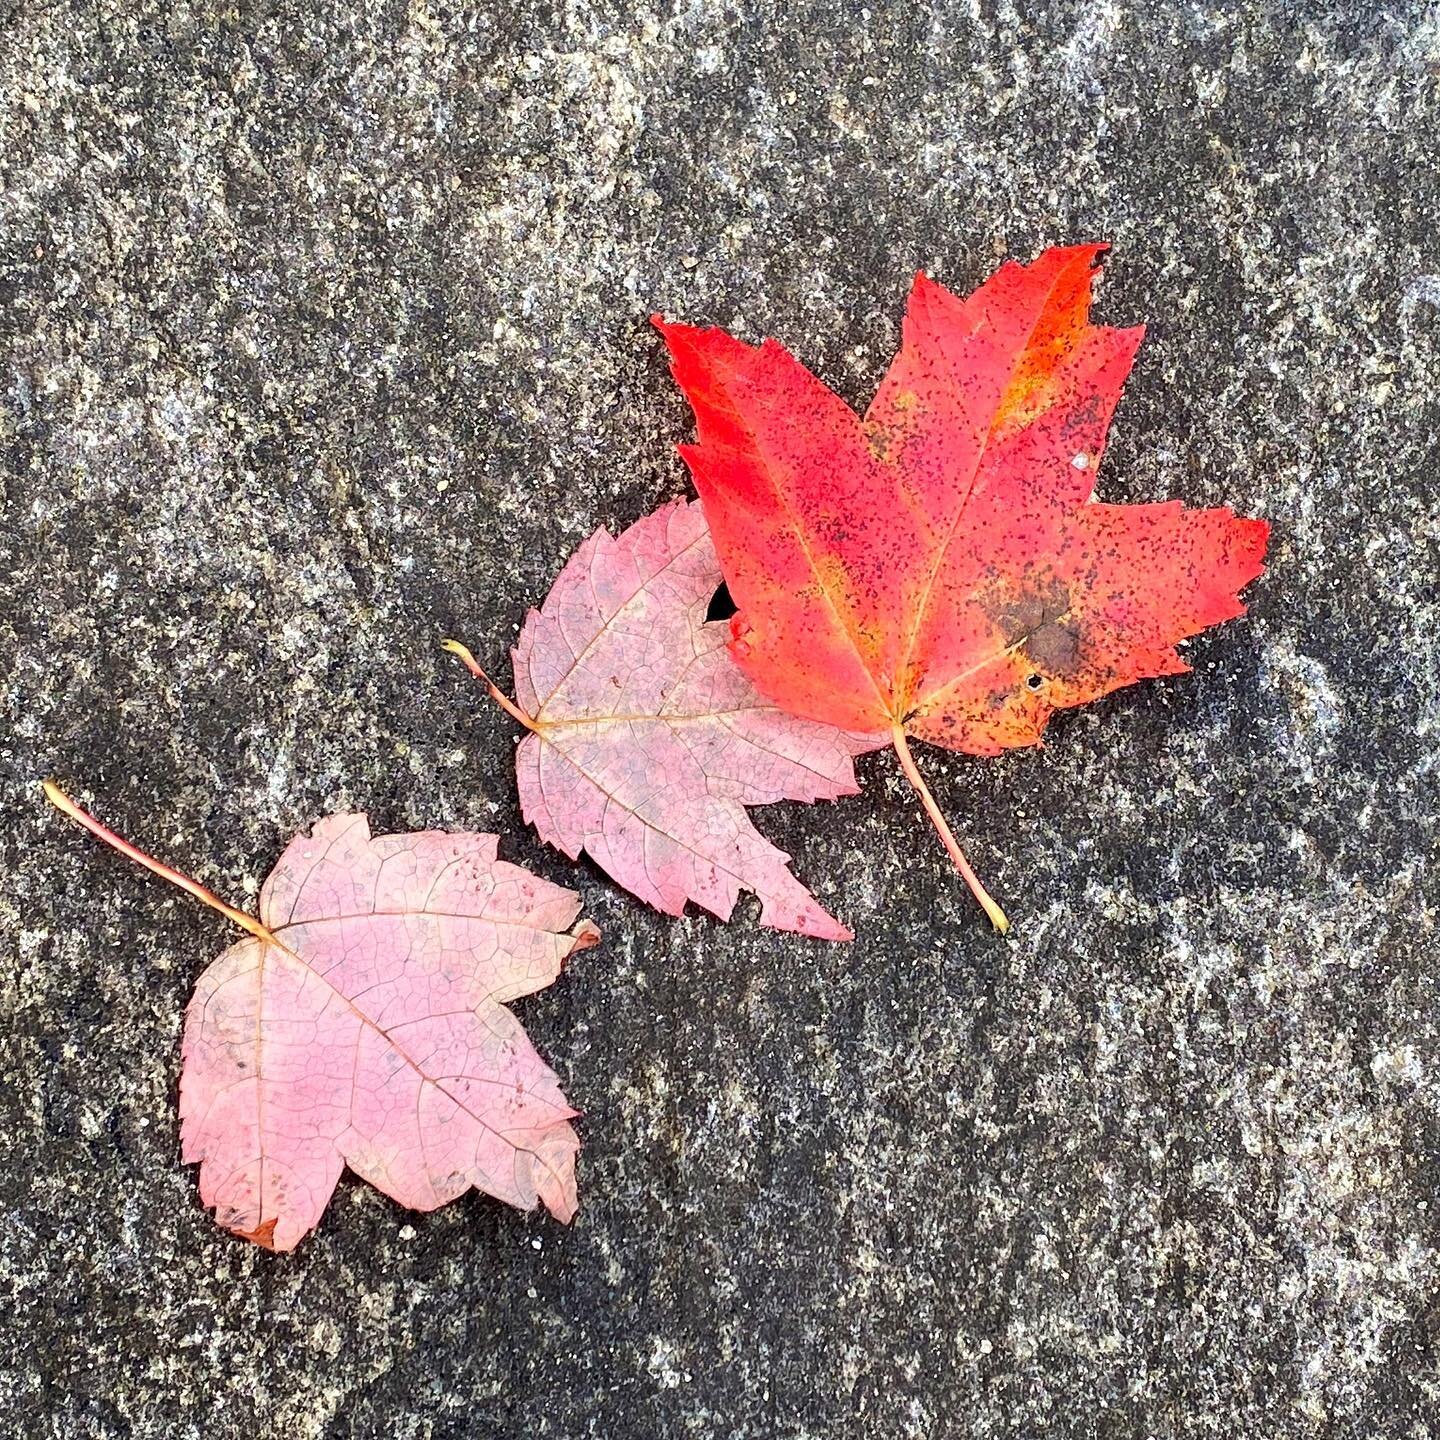 Bright color for a rainy day. 🍁

@brooklynbotanic #brooklynbotanic #cranberrylakepreserve #autumn #fallfoliage